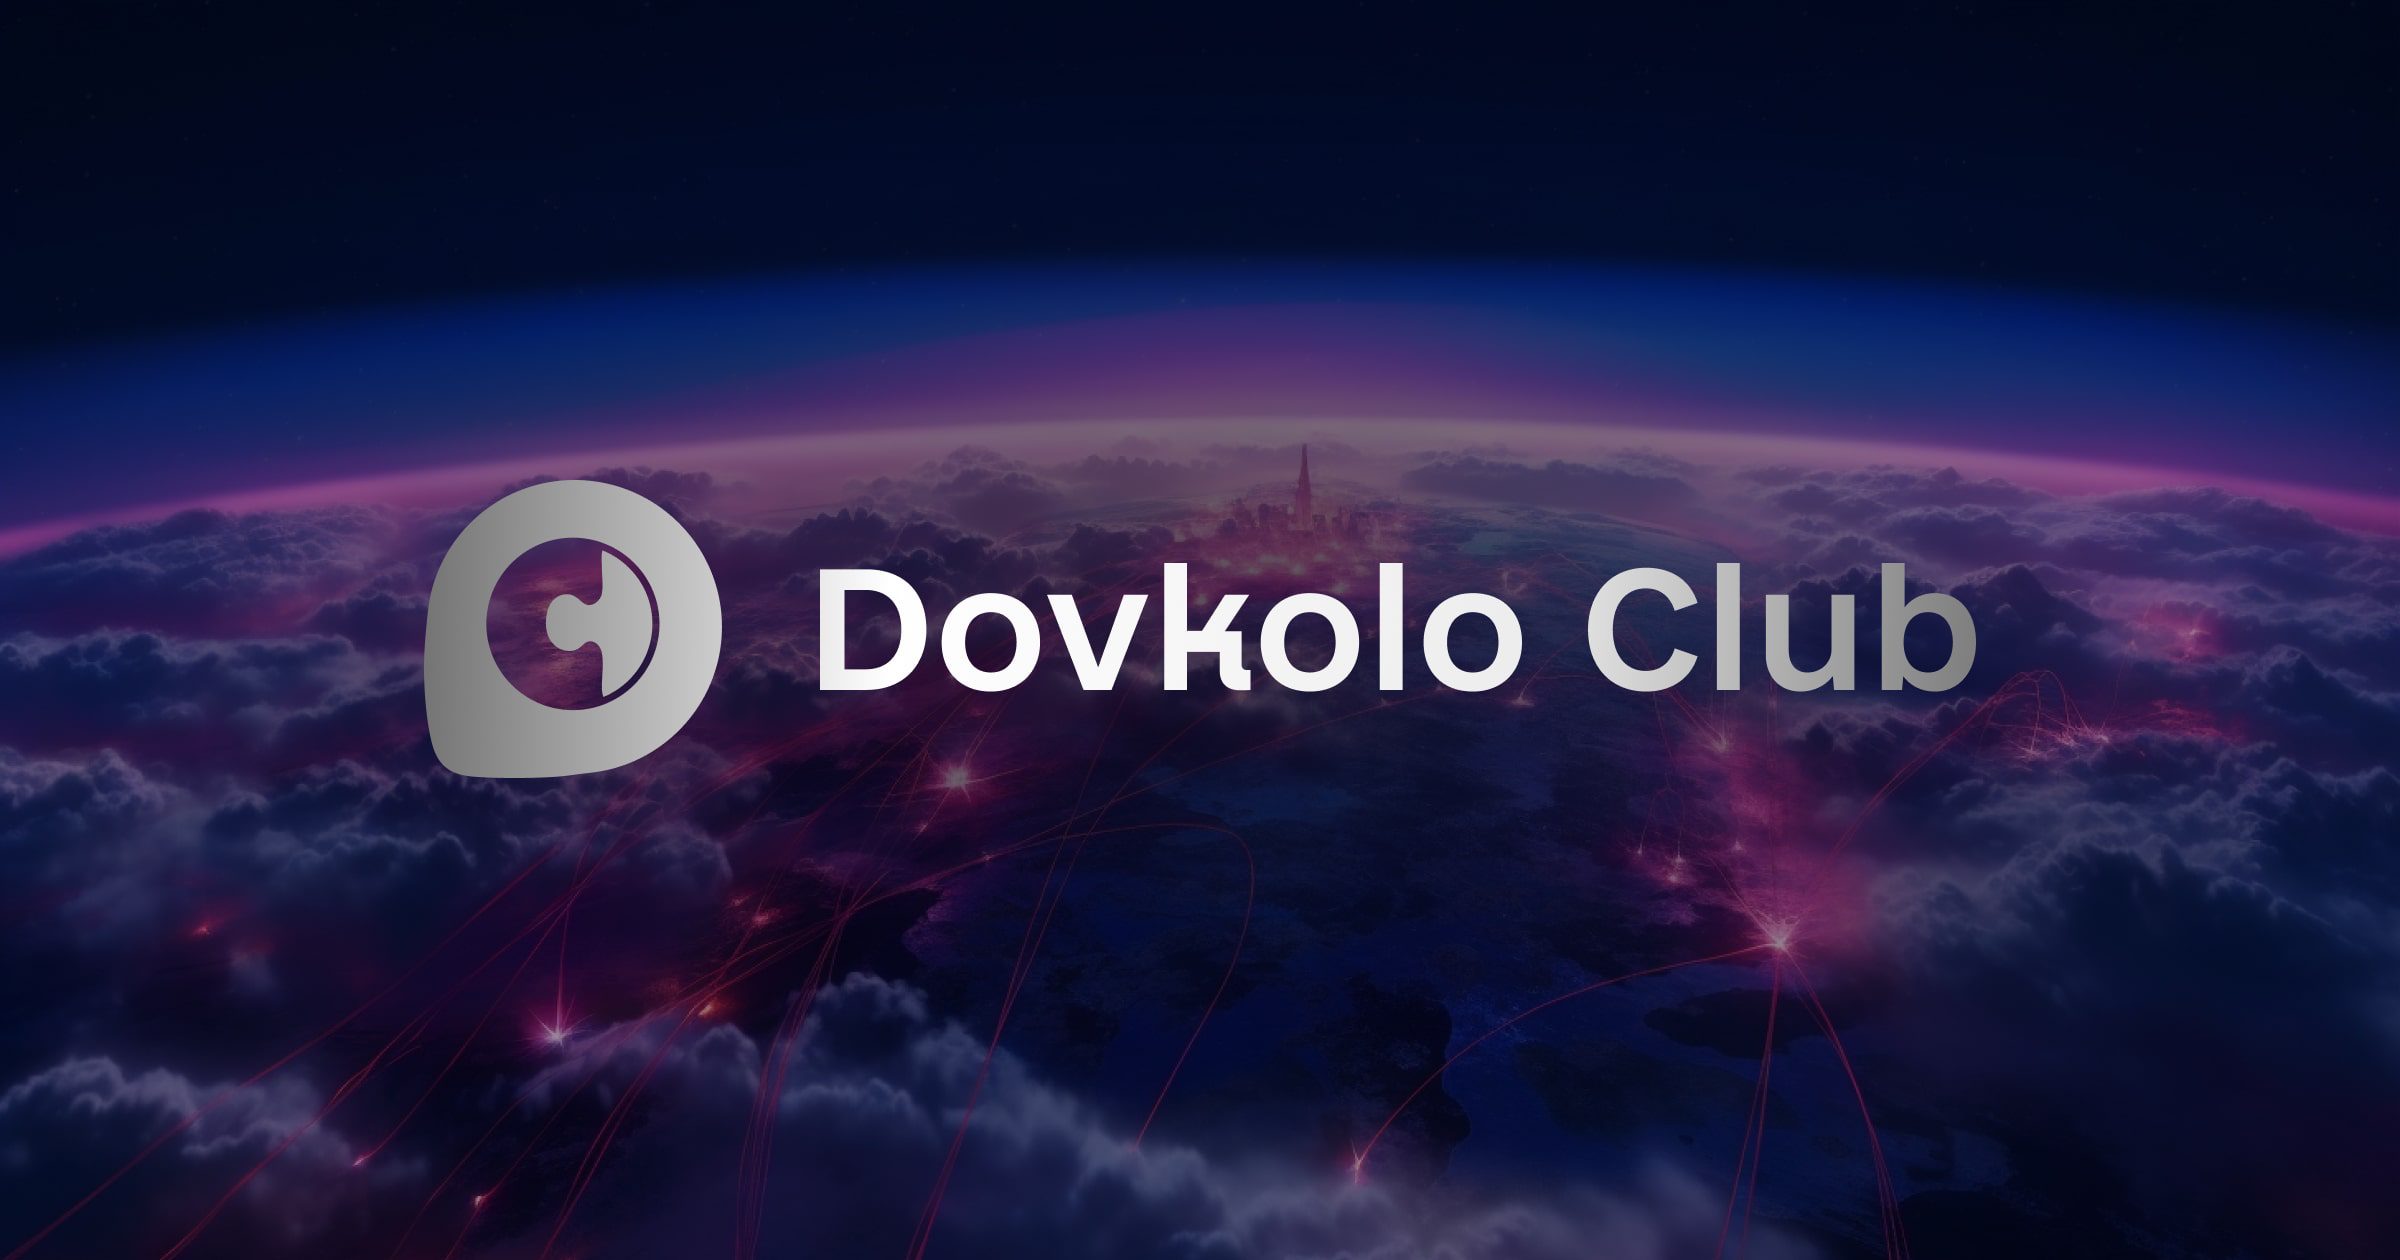 Dovkolo Club preview